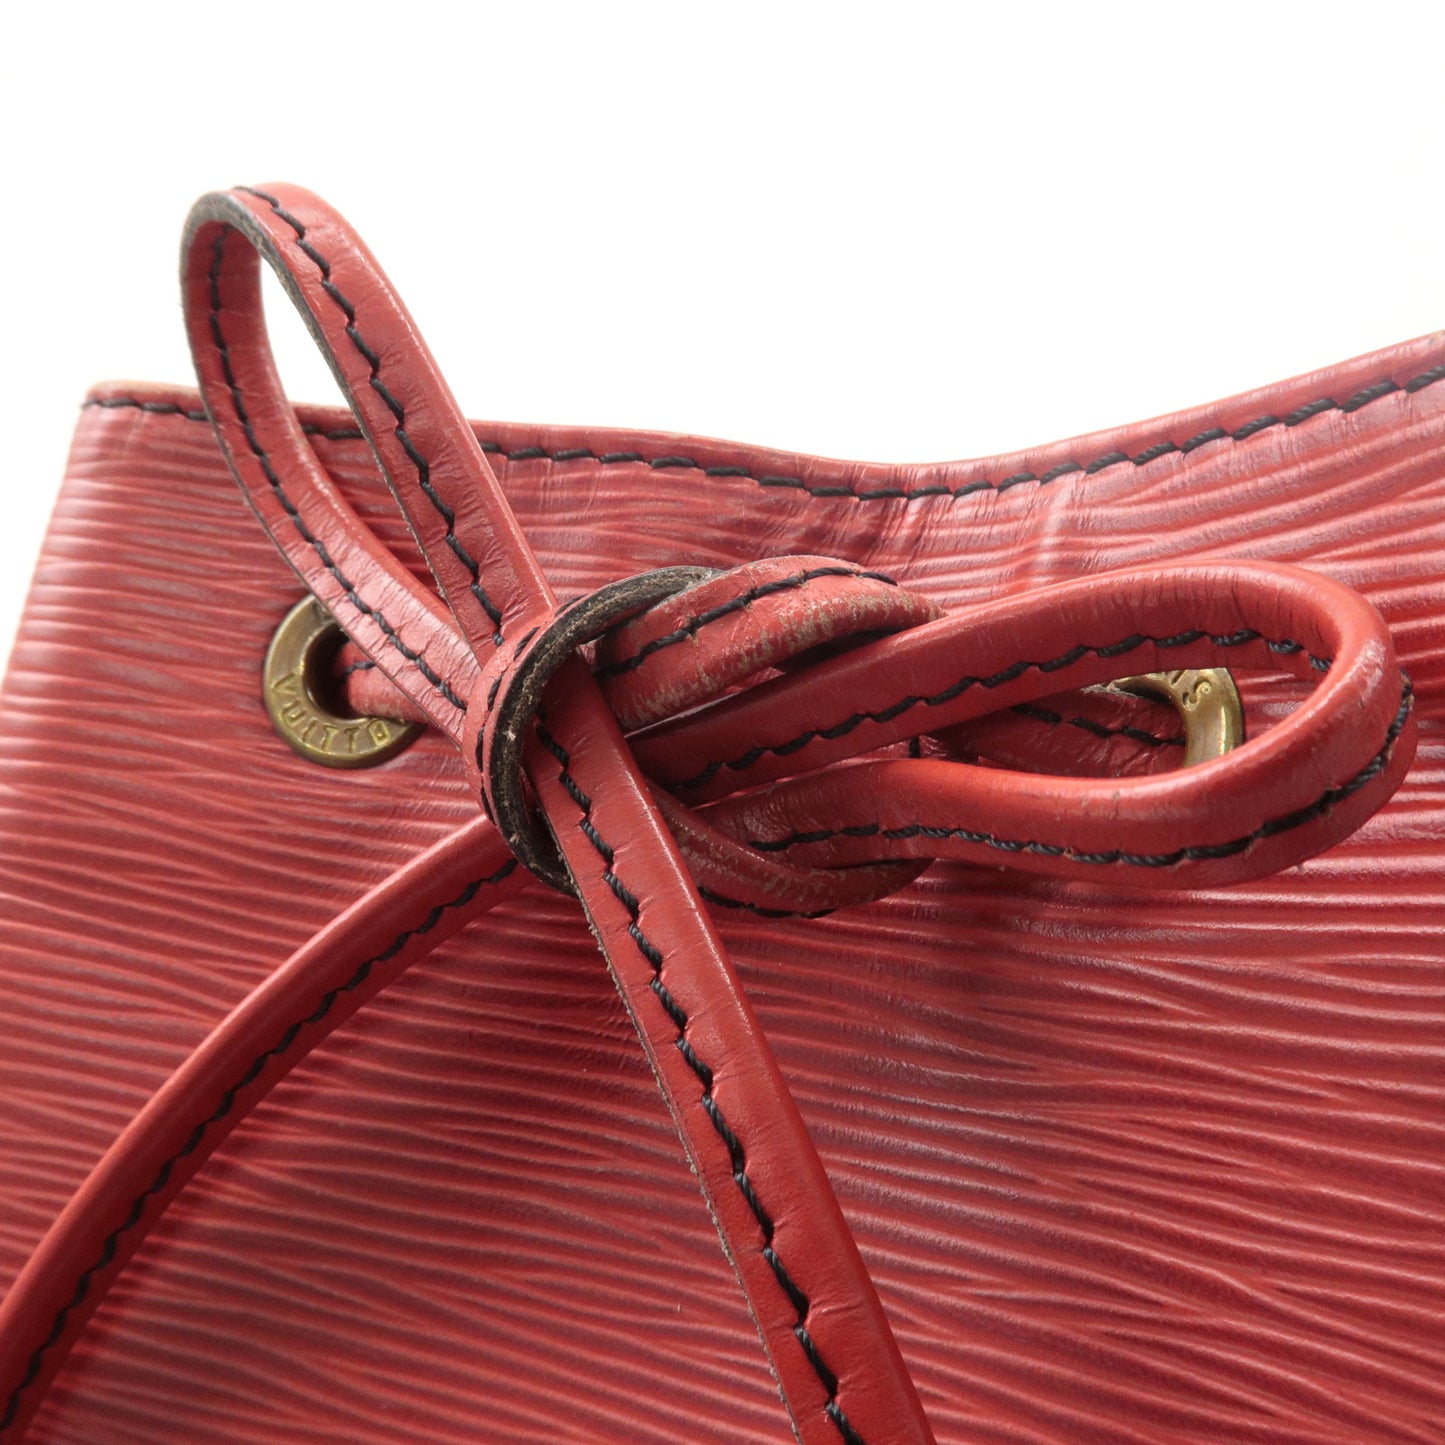 Louis Vuitton Epi Noe Shoulder Hand Bag Castilian Red M44007